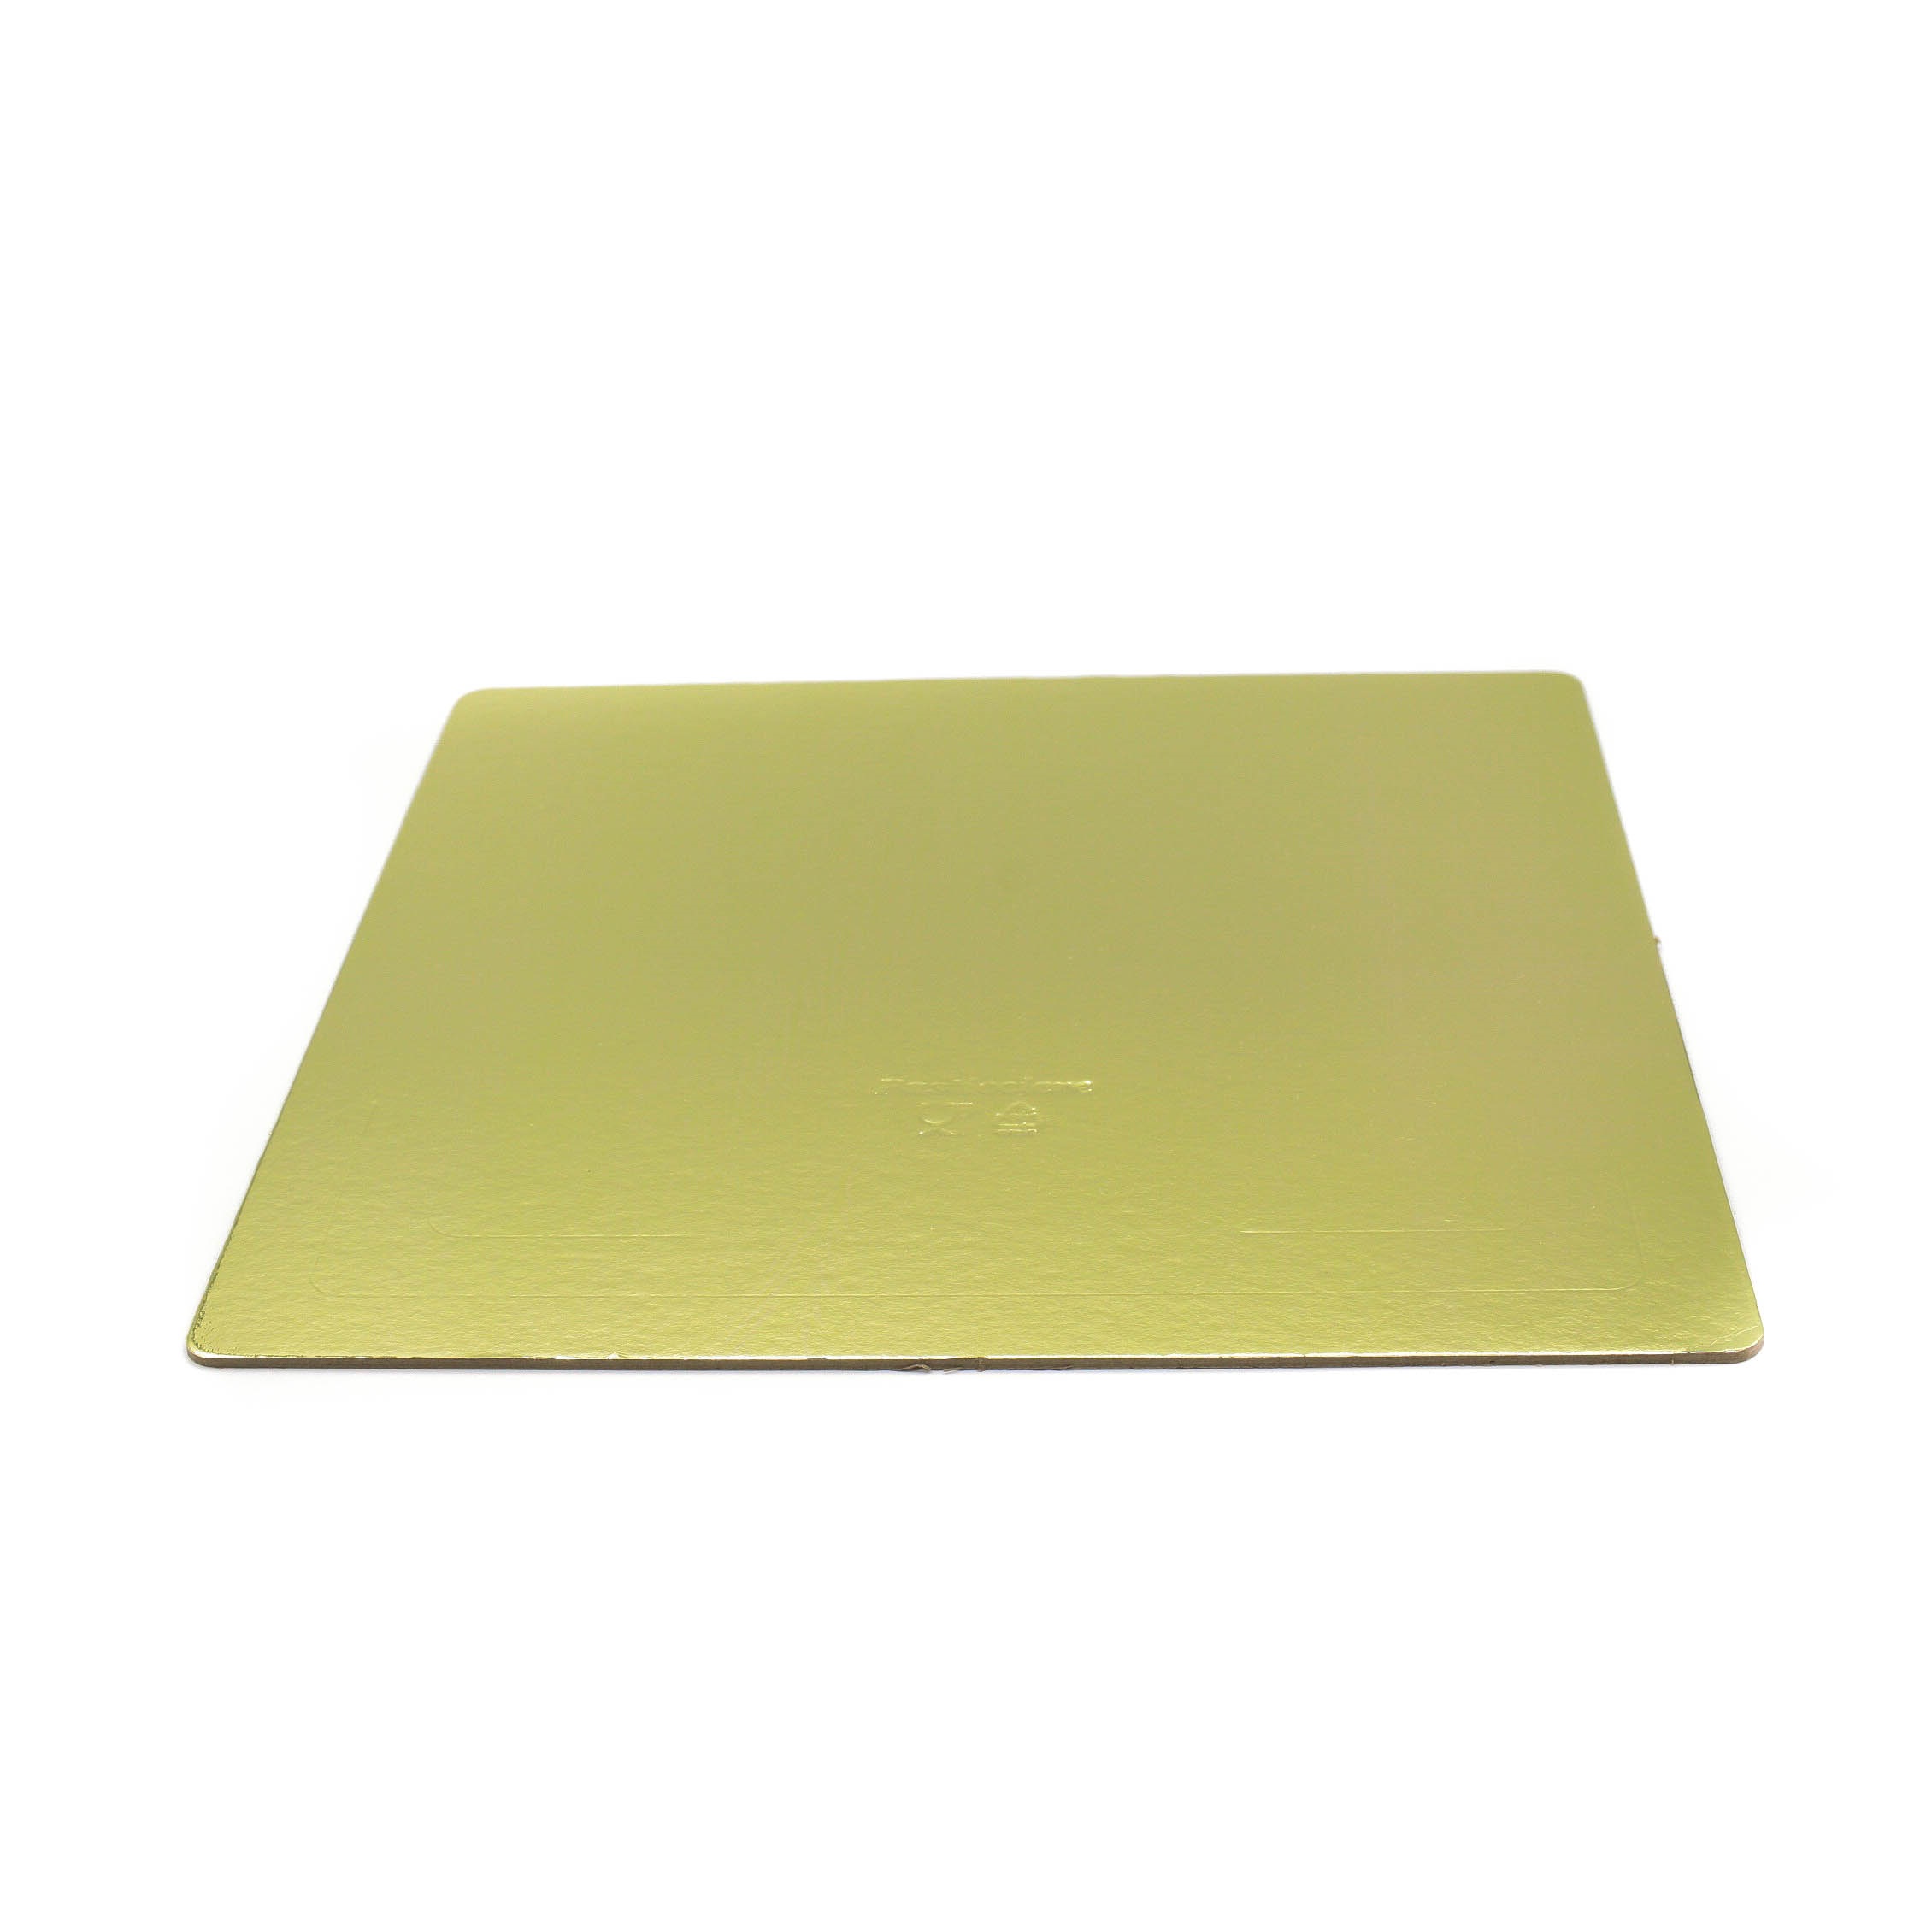 Картонная подложка квадратная GDC Pasticciere 220х220 мм золото/жемчуг